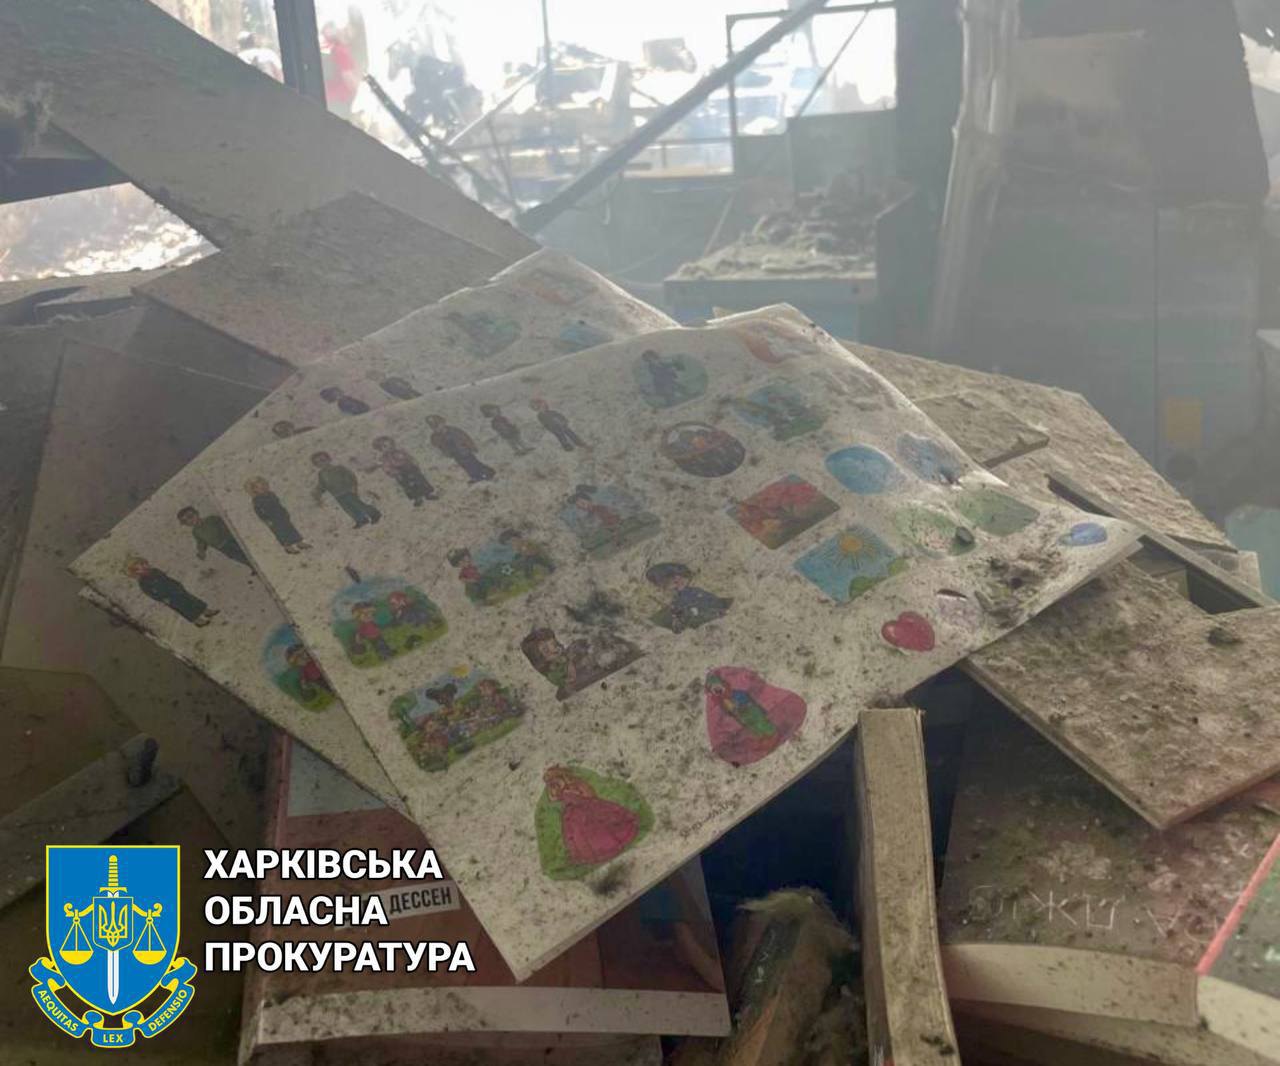 Vivat bookstore under fire in Kharkiv